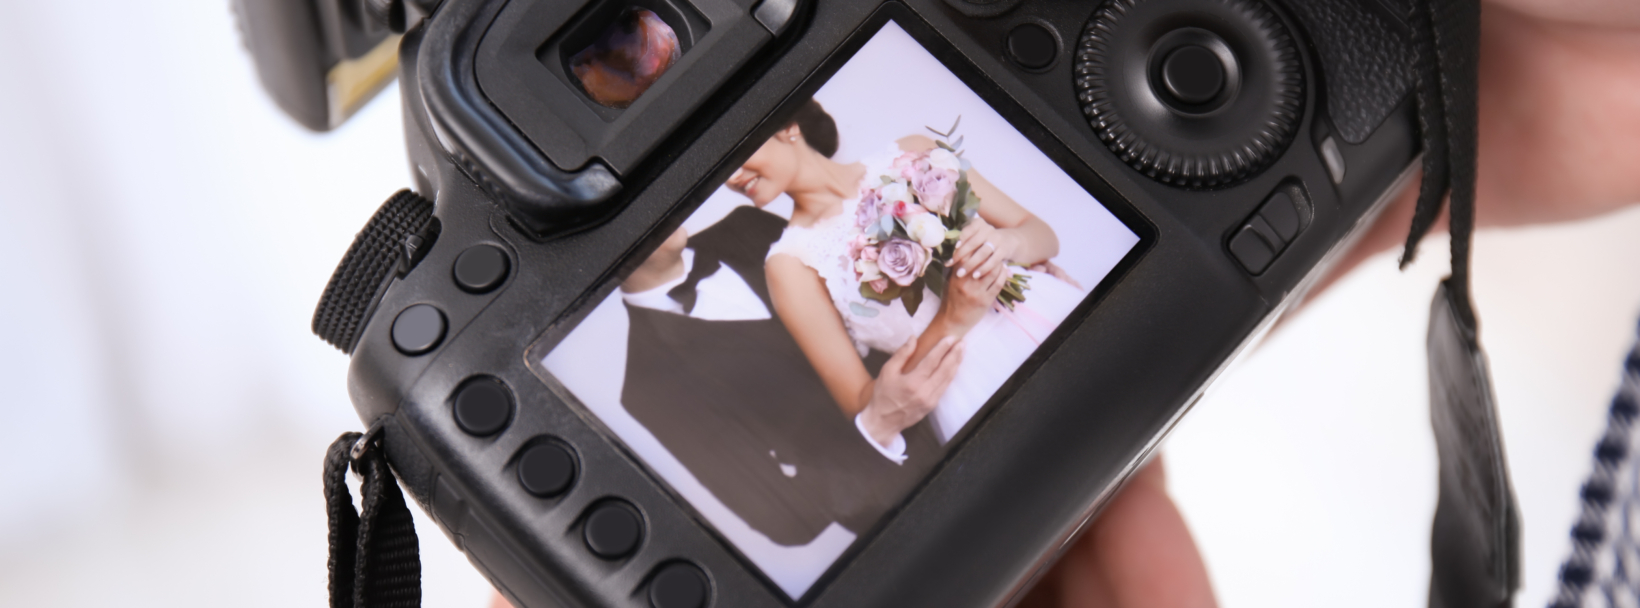 zdjęcia ze ślubu